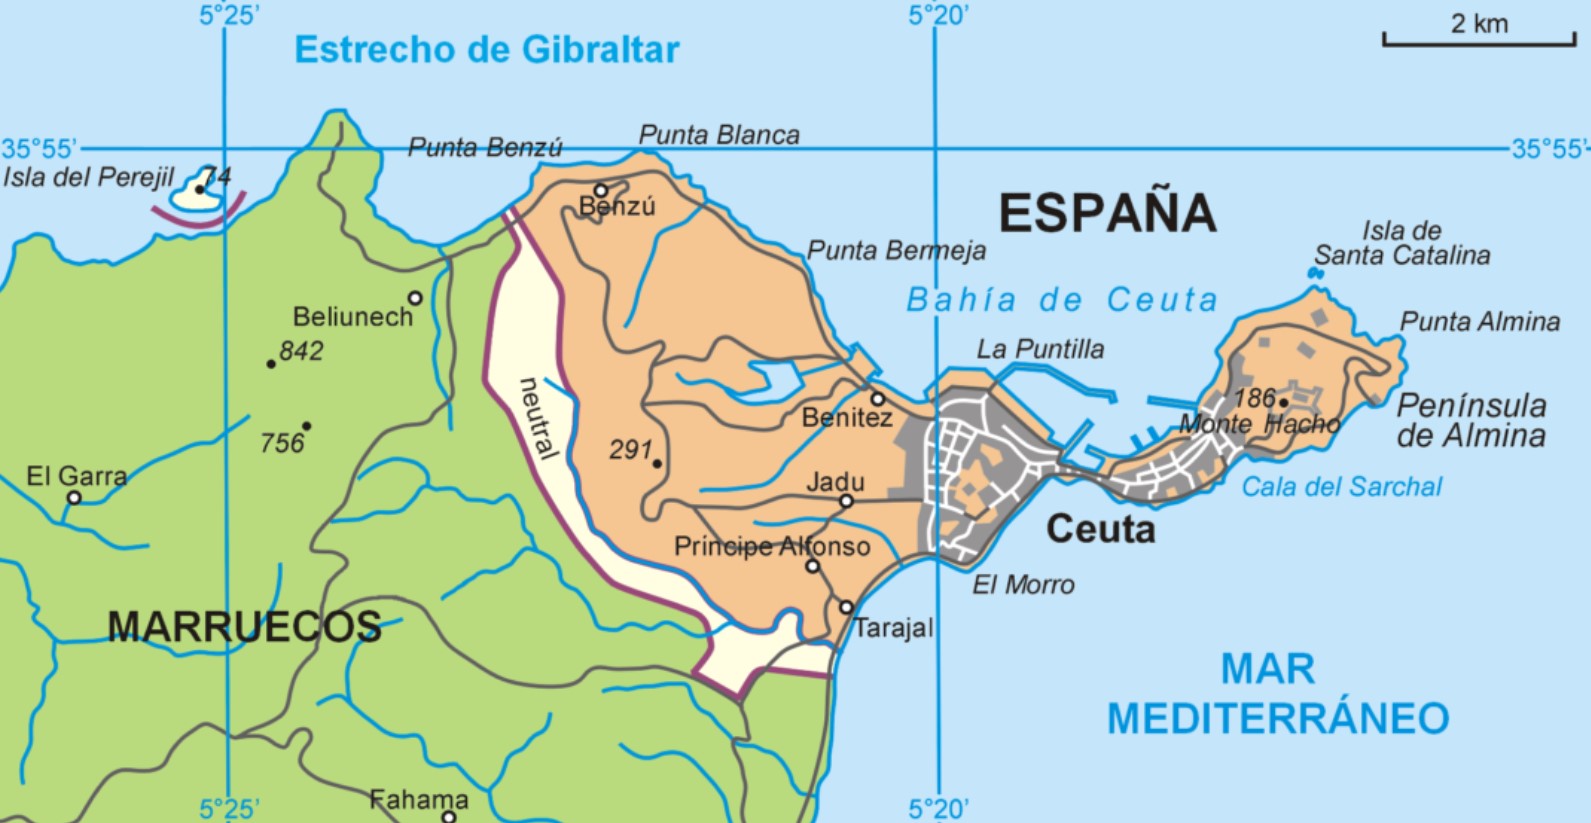 MAPS OF SPAIN BY AUTONOMOUS COMMUNITIES-9